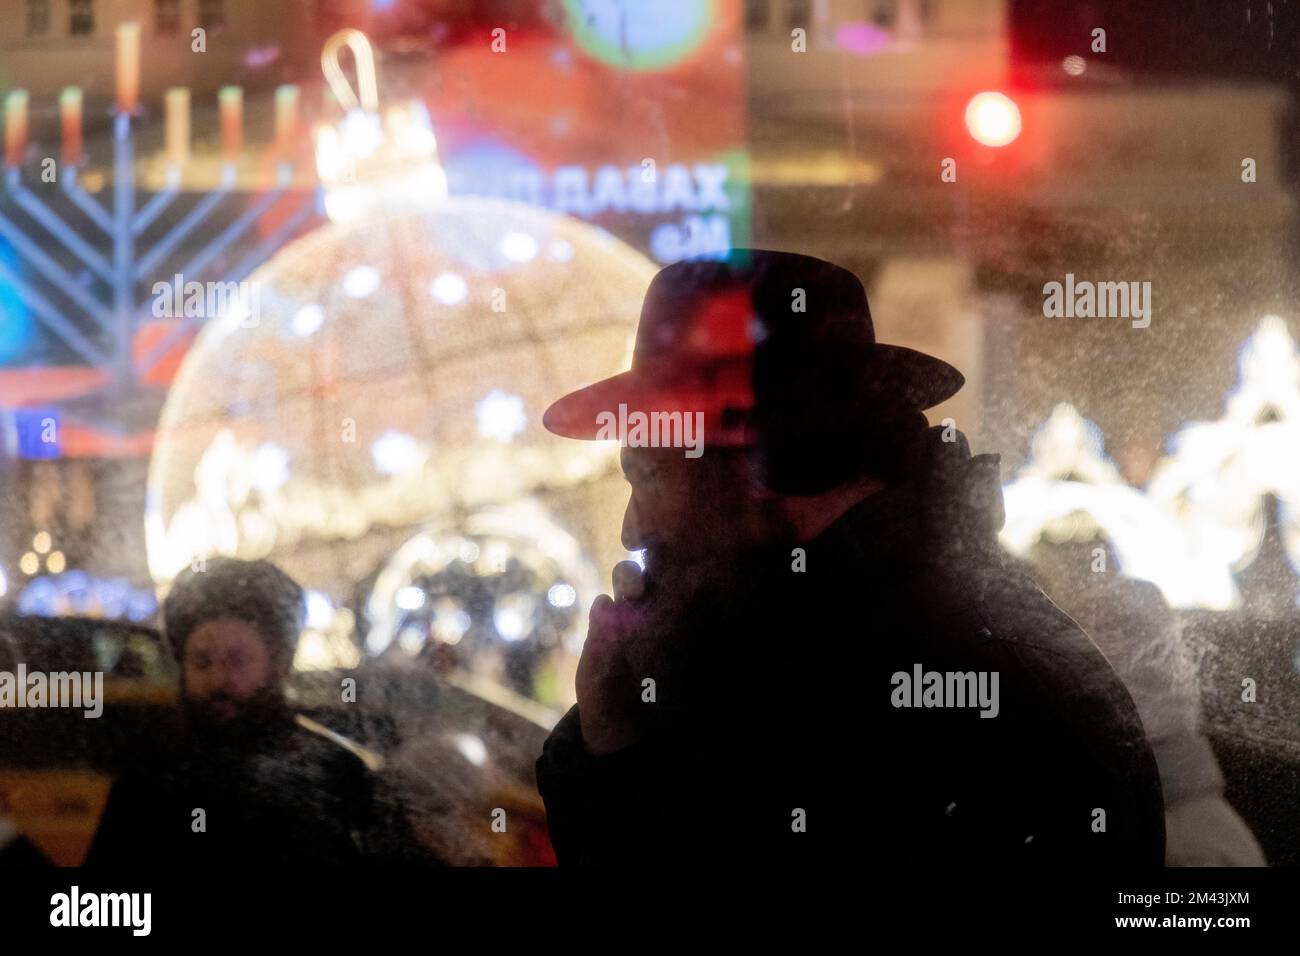 Moskau, Russland. 18.. Dezember 2022. Menschen nehmen an einer Veranstaltung zur Feier von Hanukkah auf dem Platz der Revolution in Moskau, Russland, Teil. Hanukkah ist ein jüdisches Festival, das der Wiedererlangung Jerusalems im 2.. Jahrhundert v. Chr. gedenkt. Dieses Jahr wird der 18-26. Dezember gefeiert. Nikolay Vinokurov/Alamy Live News Stockfoto